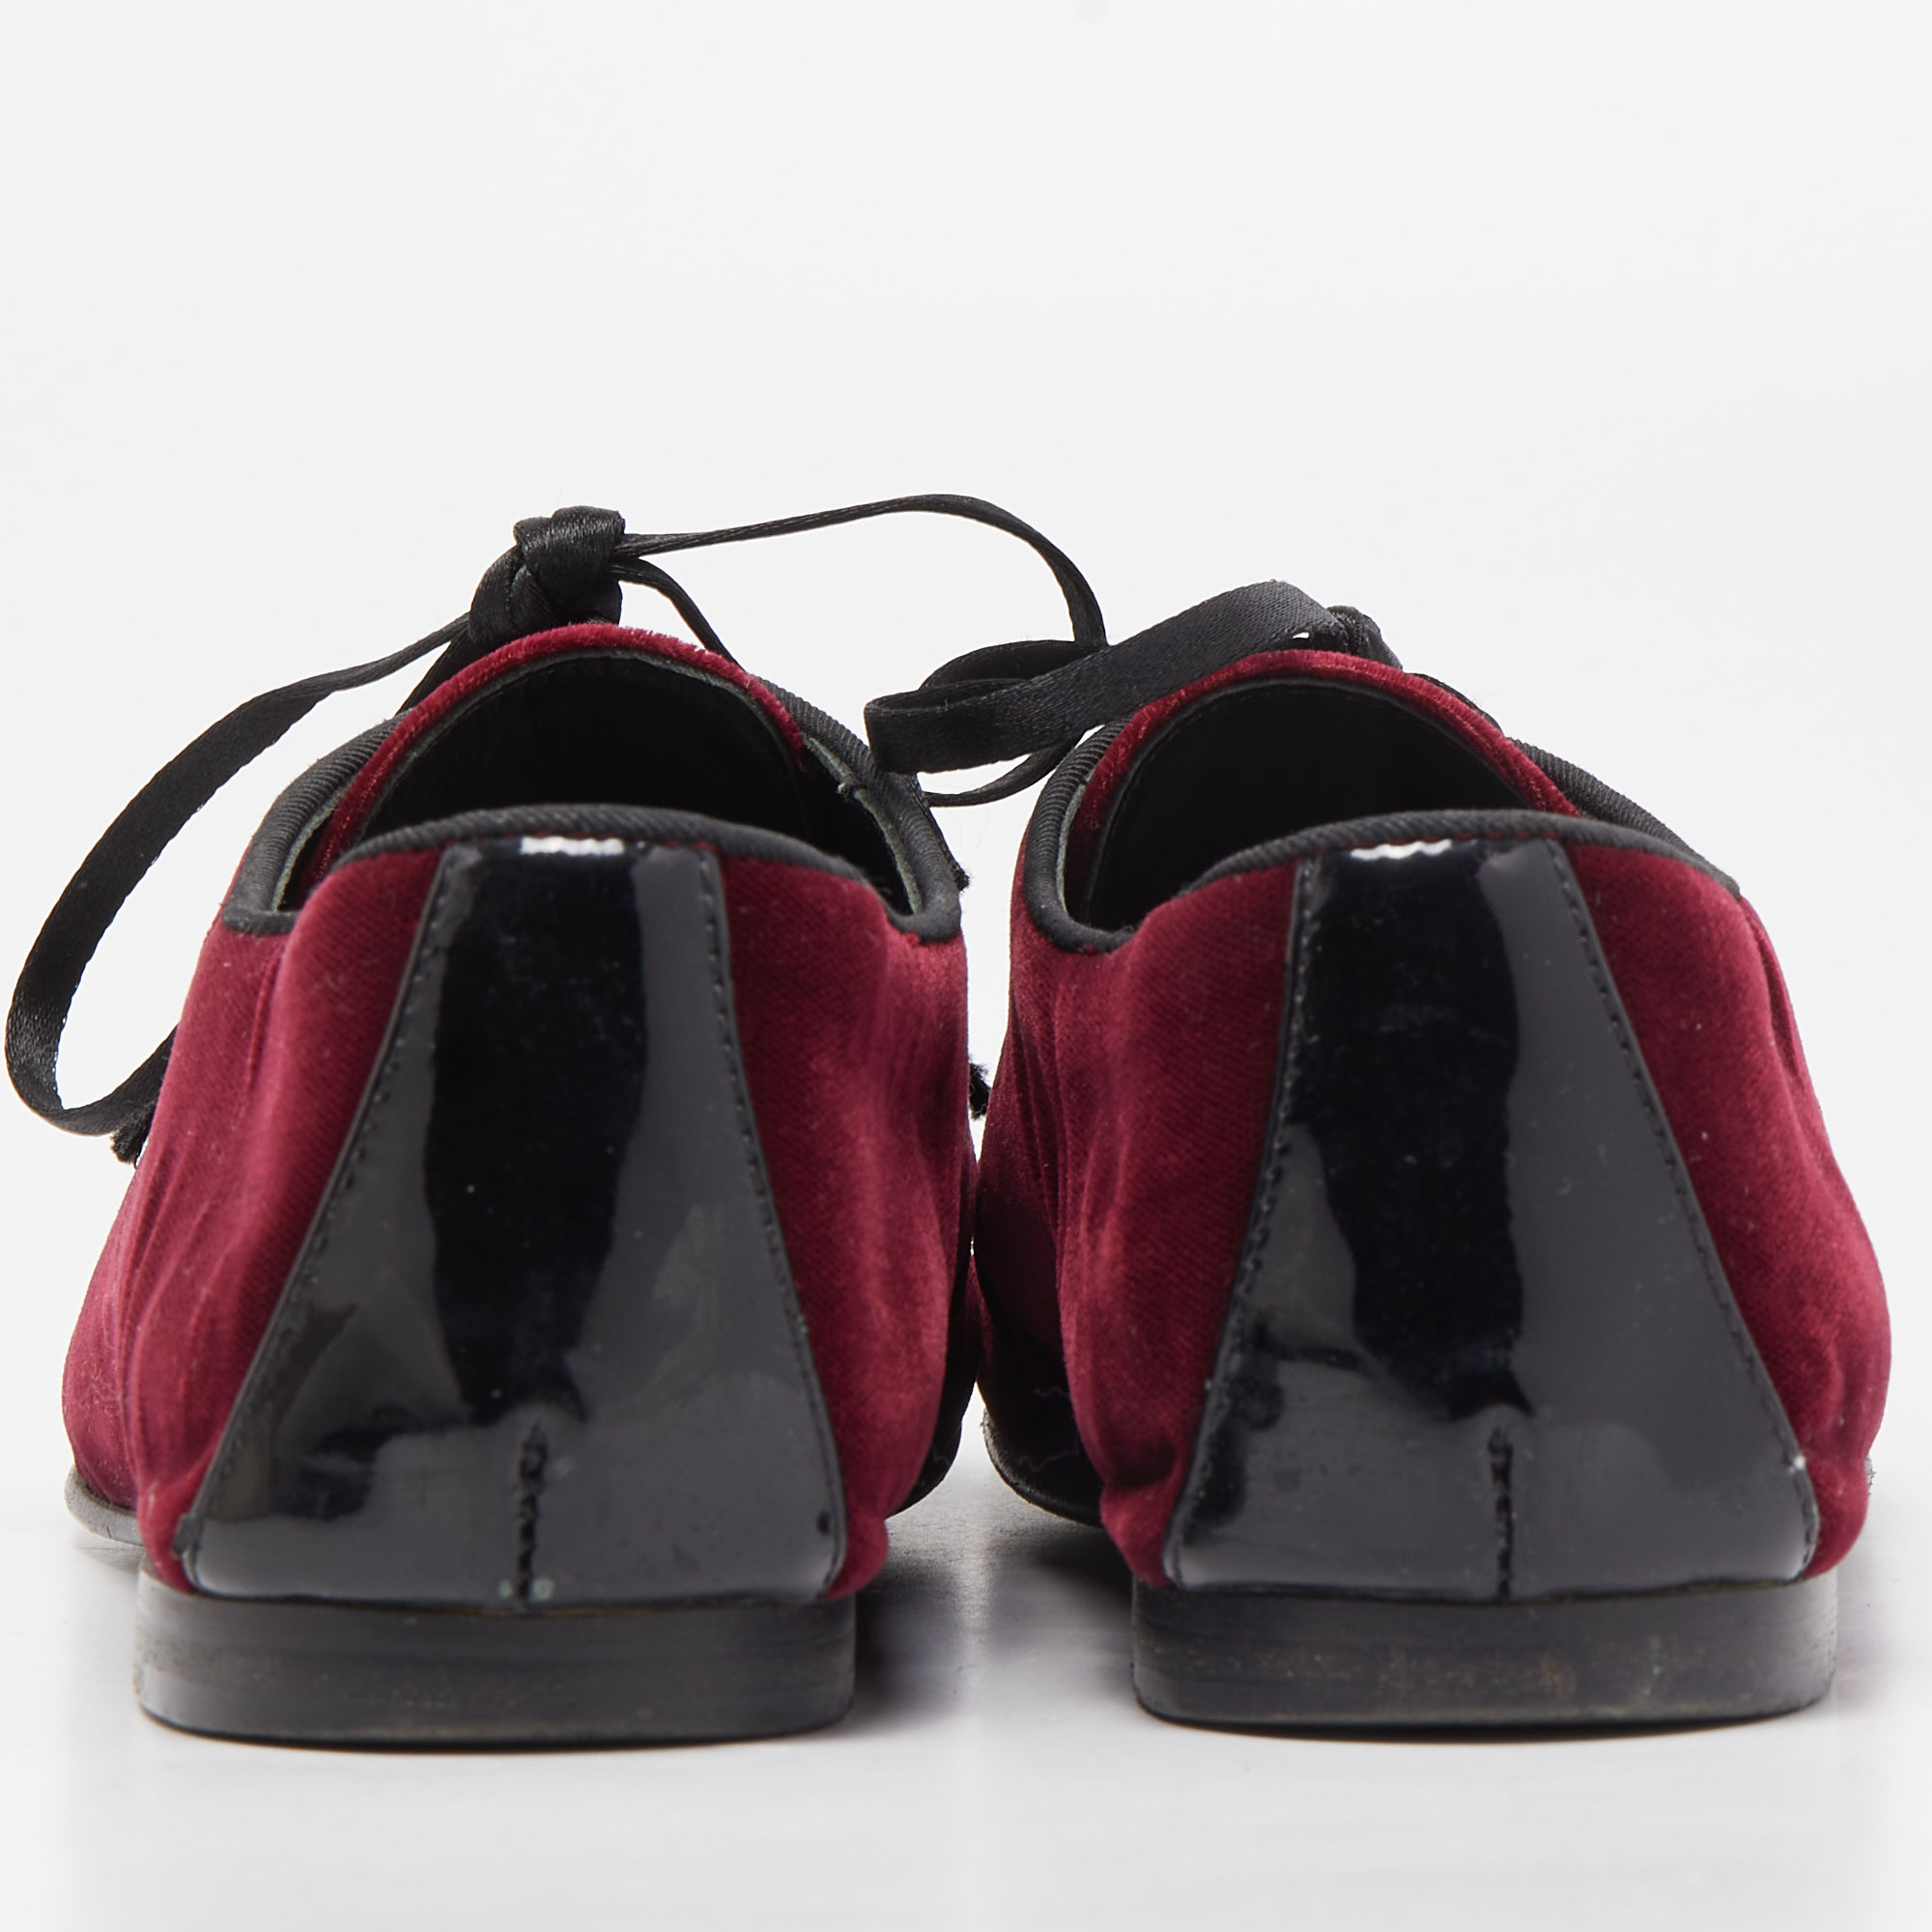 Giuseppe Zanotti Burgundy Velvet Lace Up Loafers Size 37